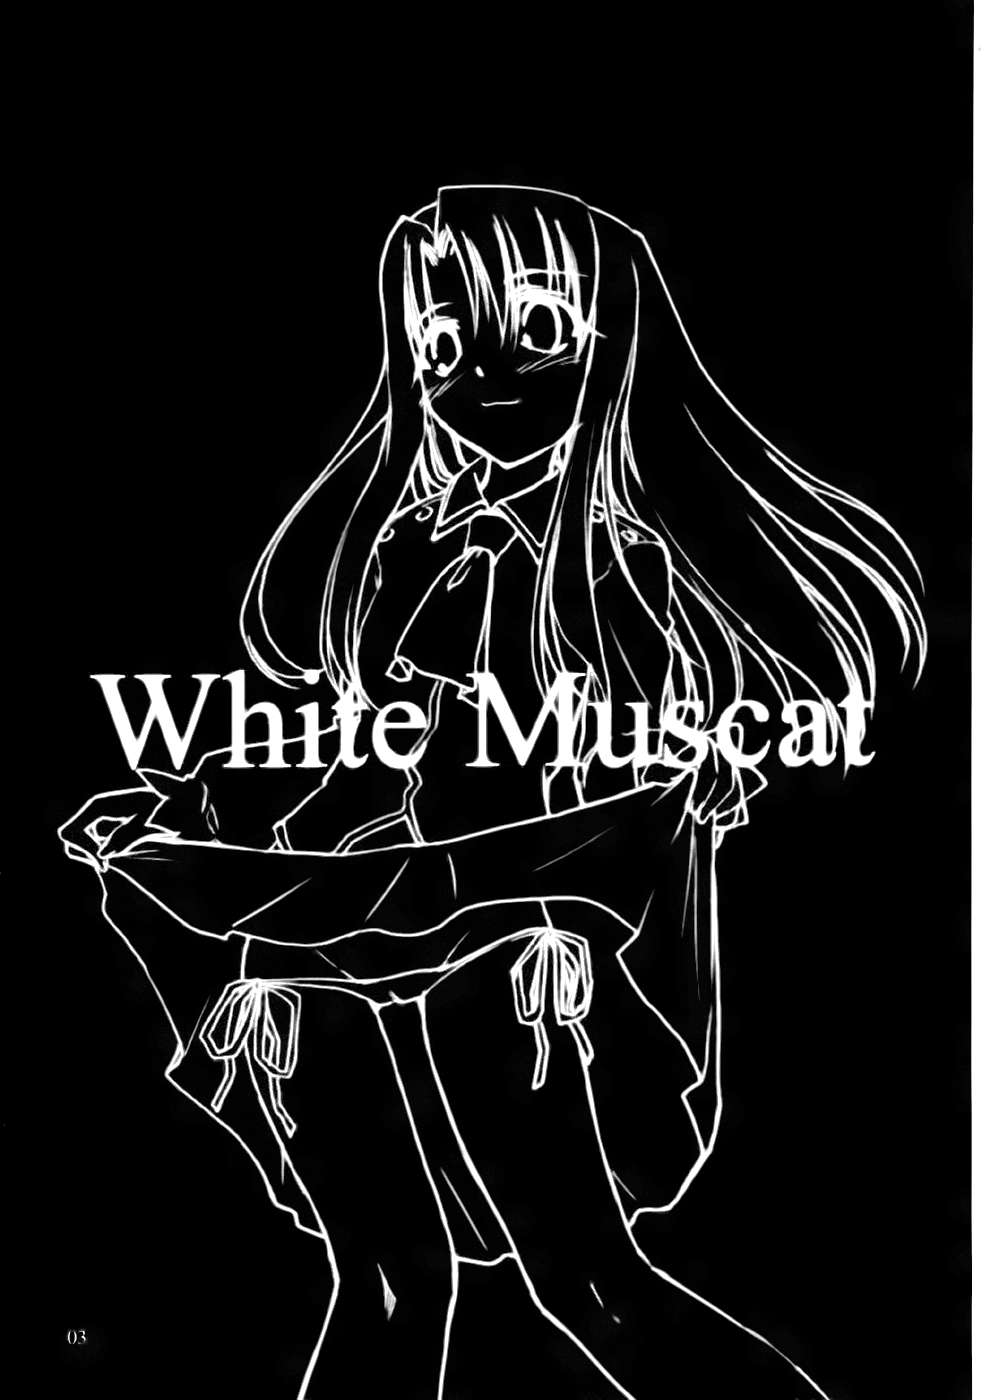 [しもやけ堂 (逢魔刻壱)] White Muscat (Fate/stay night) [中国翻訳]